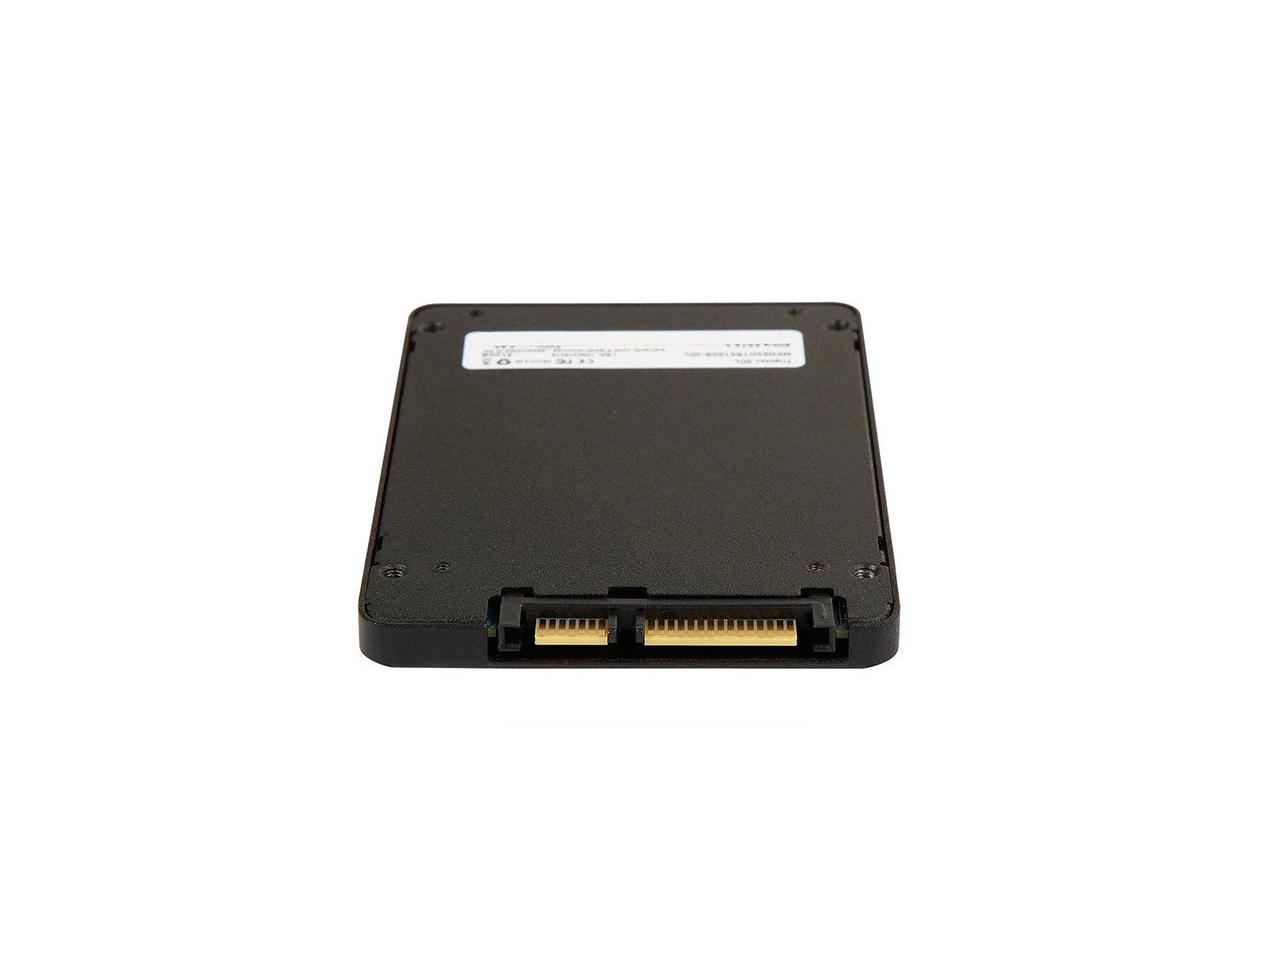 Mushkin Source-II 960GB 2.5 Inch SATA III 6Gb/s 3D Vertical TLC 7mm Internal Solid State Drive (SSD) Model MKNSSDS2960GB